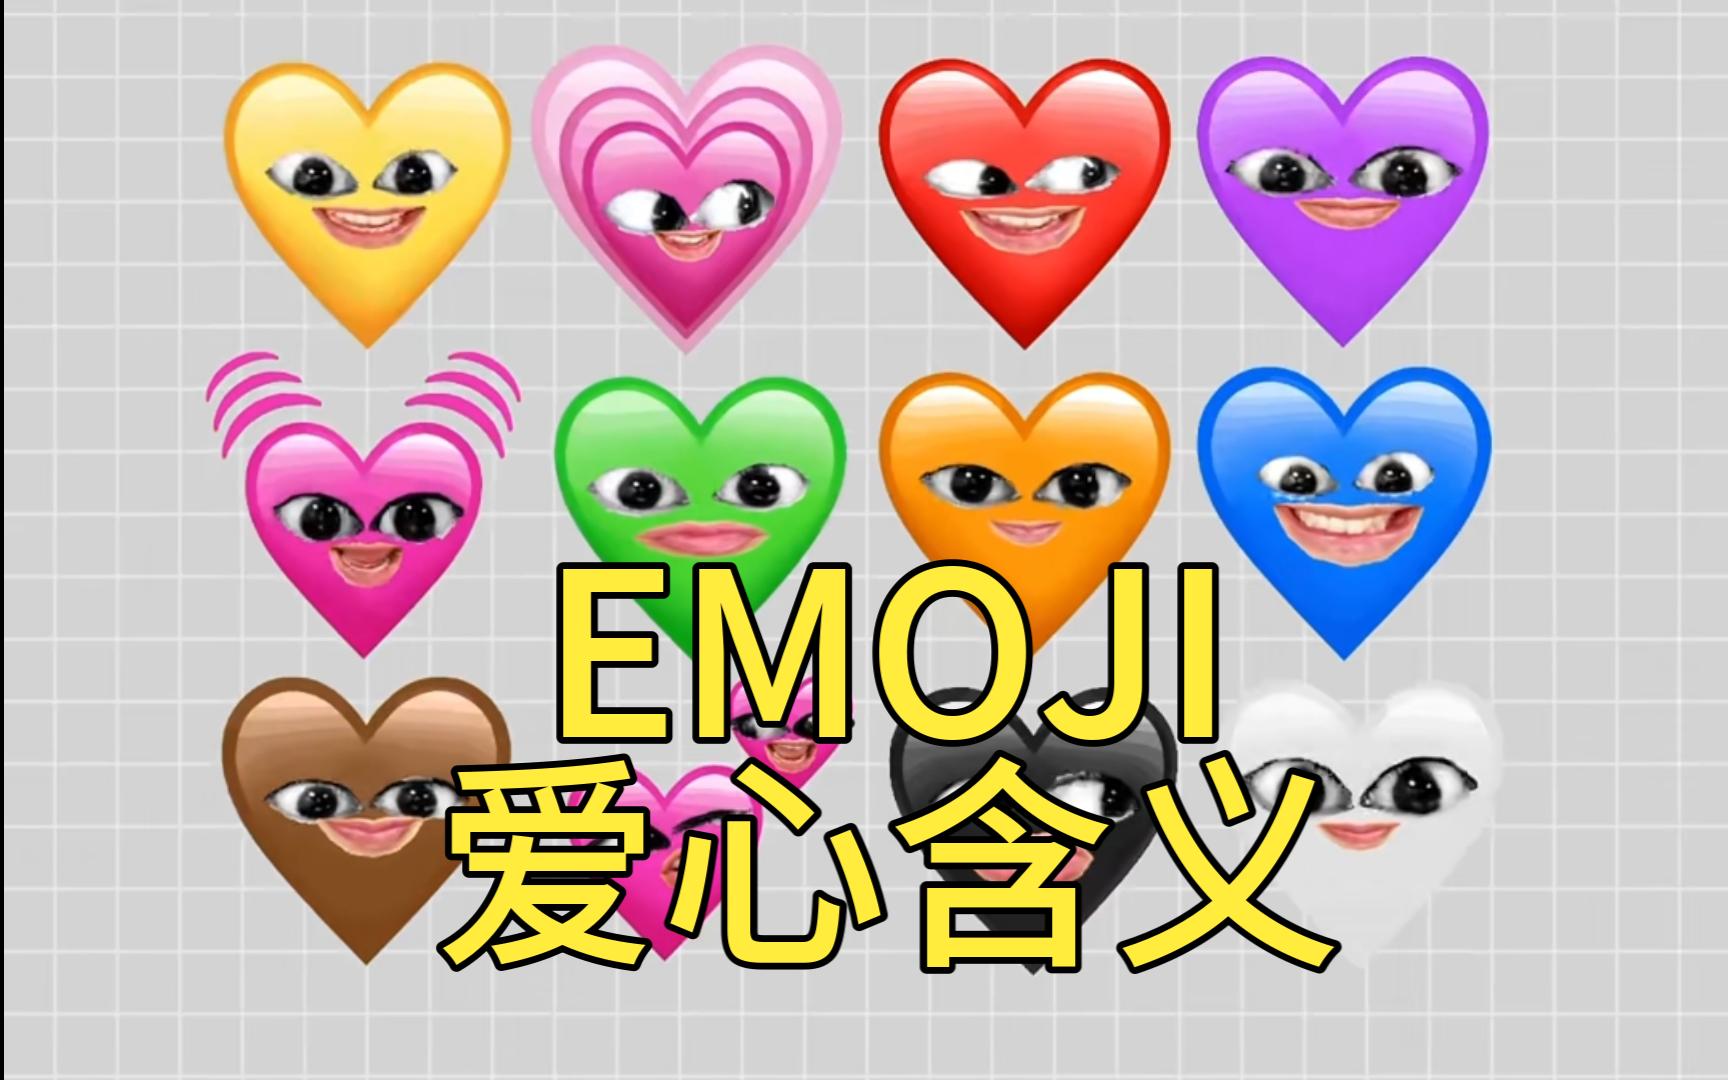 emoji的不同爱心含义都不同?